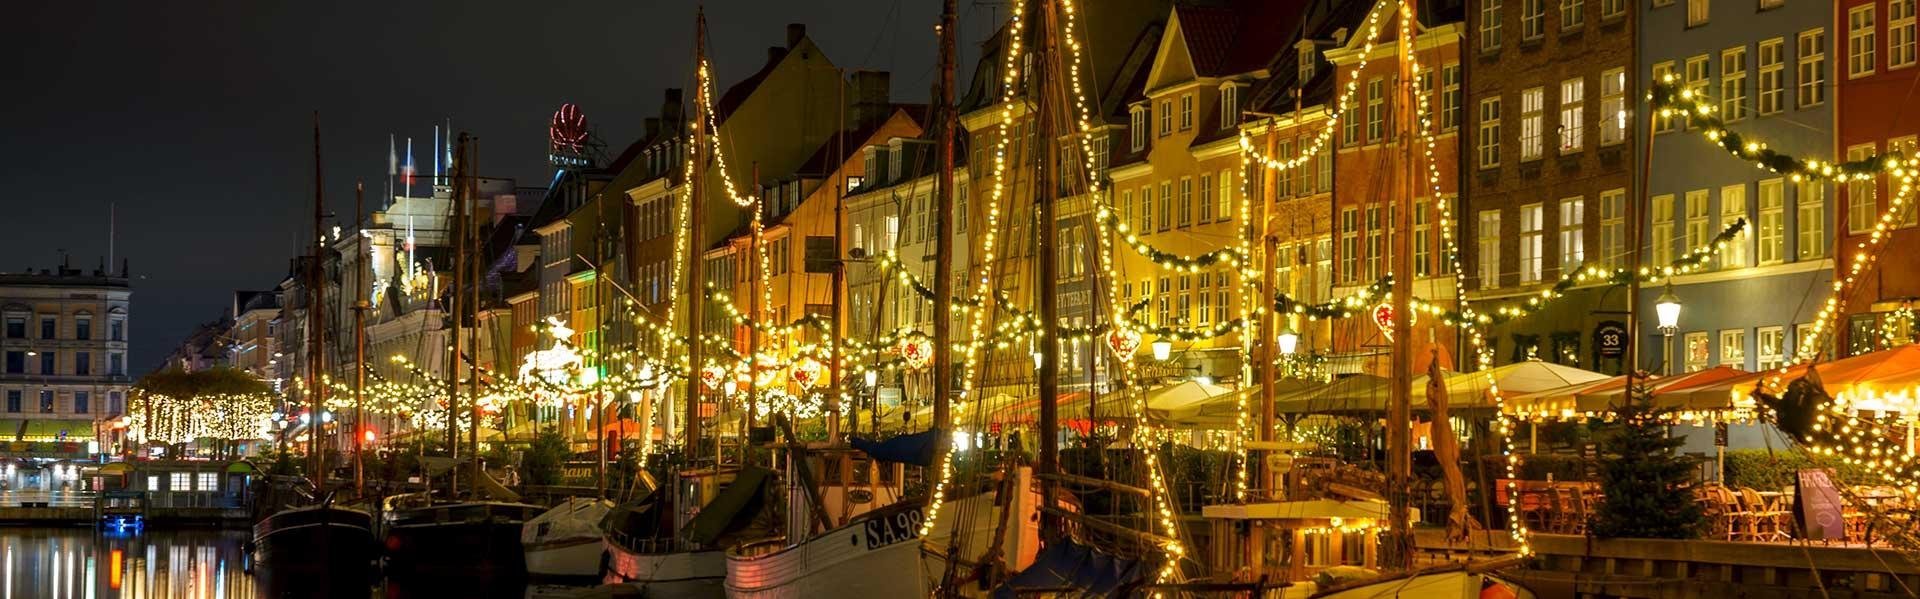 Nyhavn met kerst, Kopenhagen, Denemarken